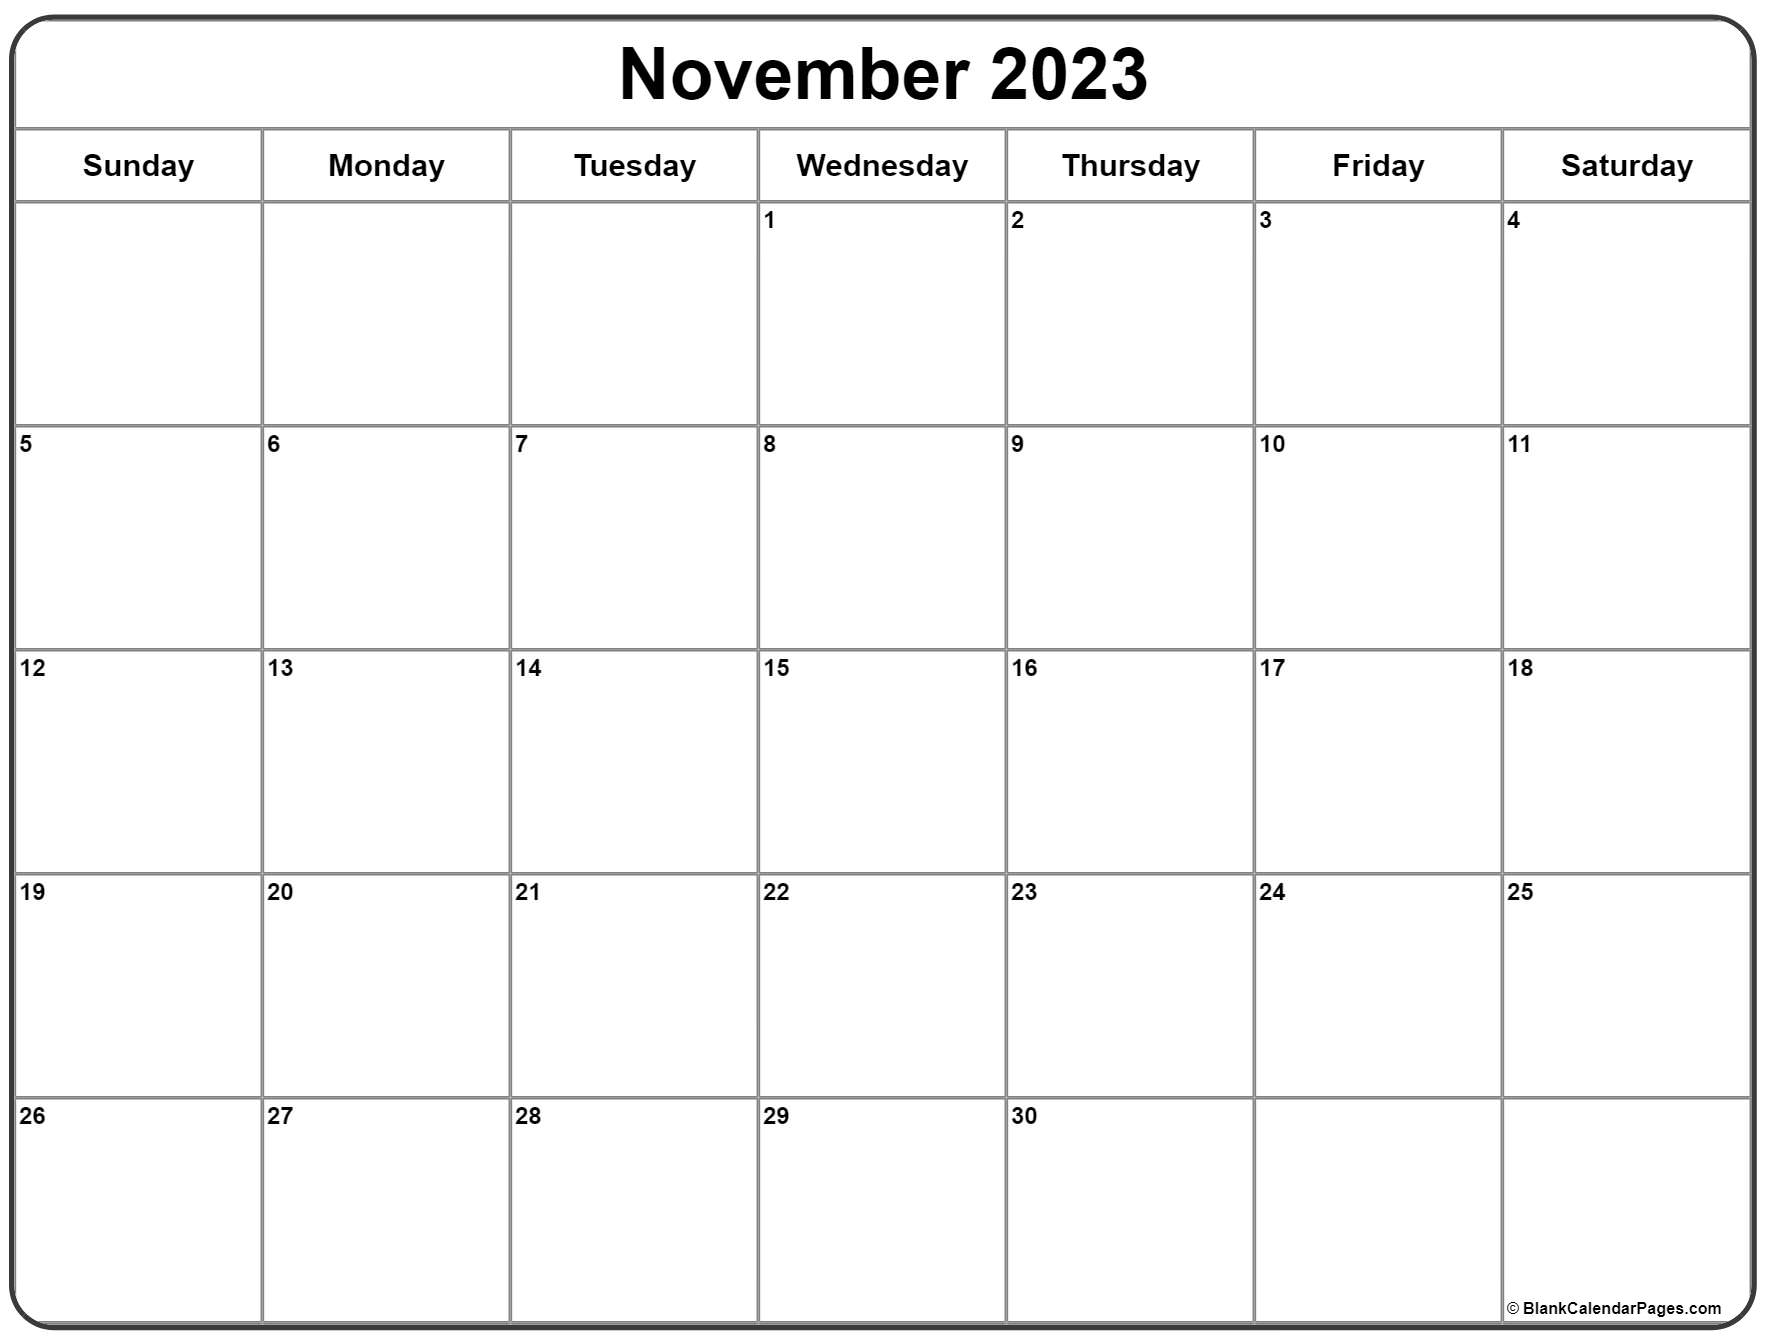 kalender-november-2023-als-pdf-vorlagen-bank2home